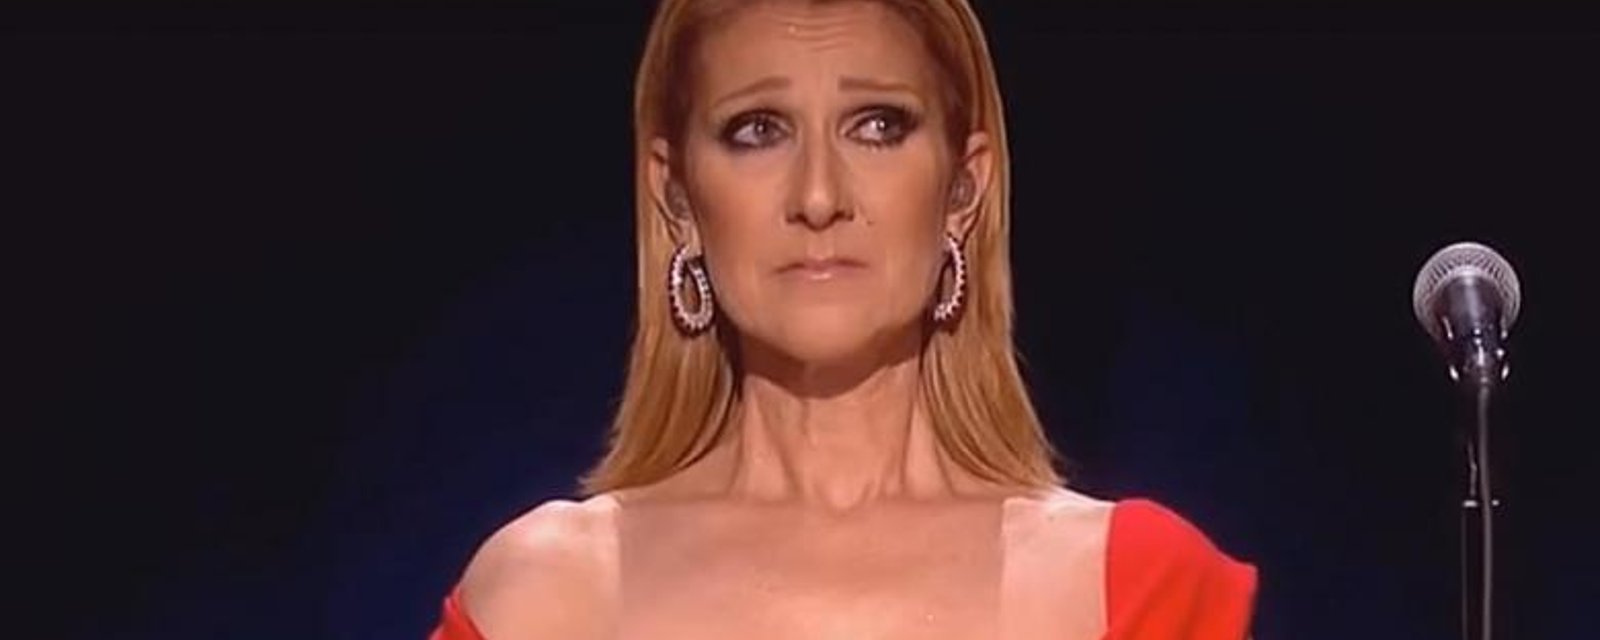 Céline Dion fond en larmes en direct à la télévision en rendant hommage à René Angélil.